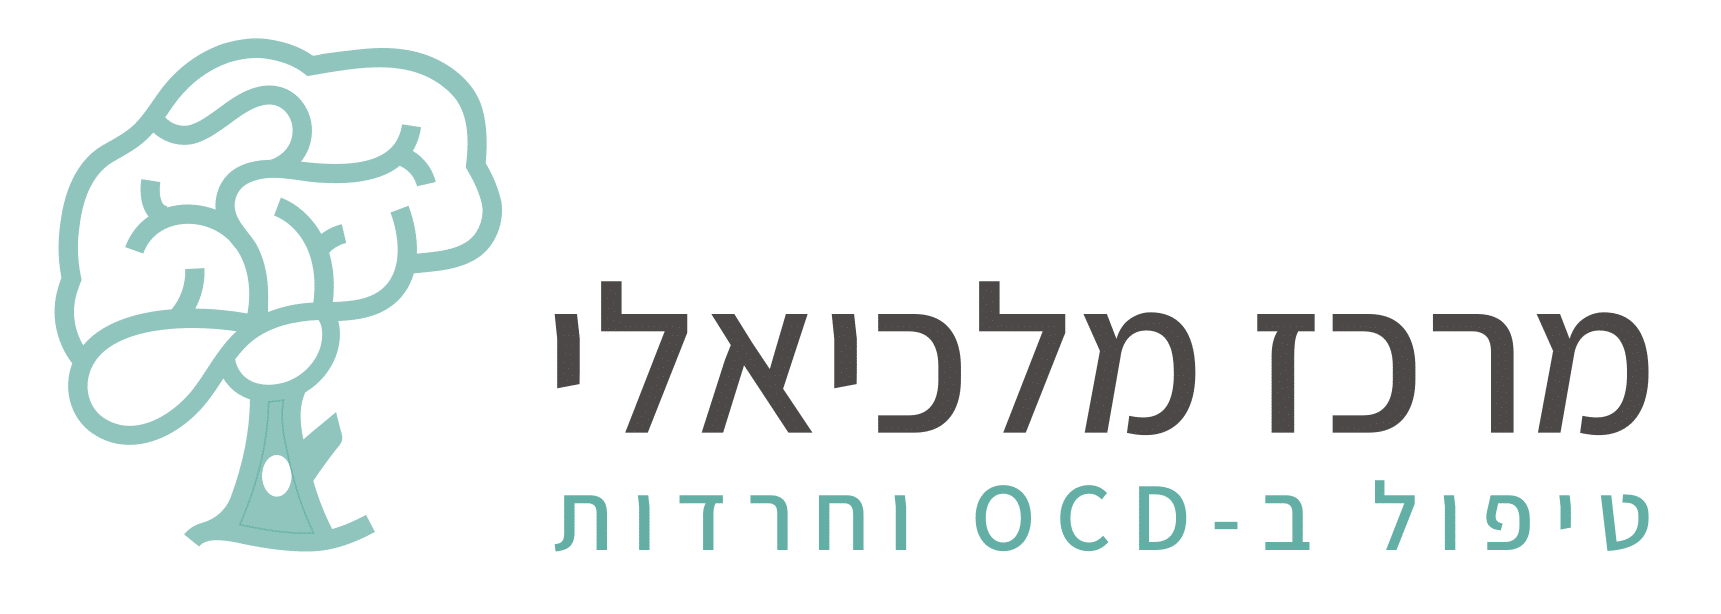 Original-Logo